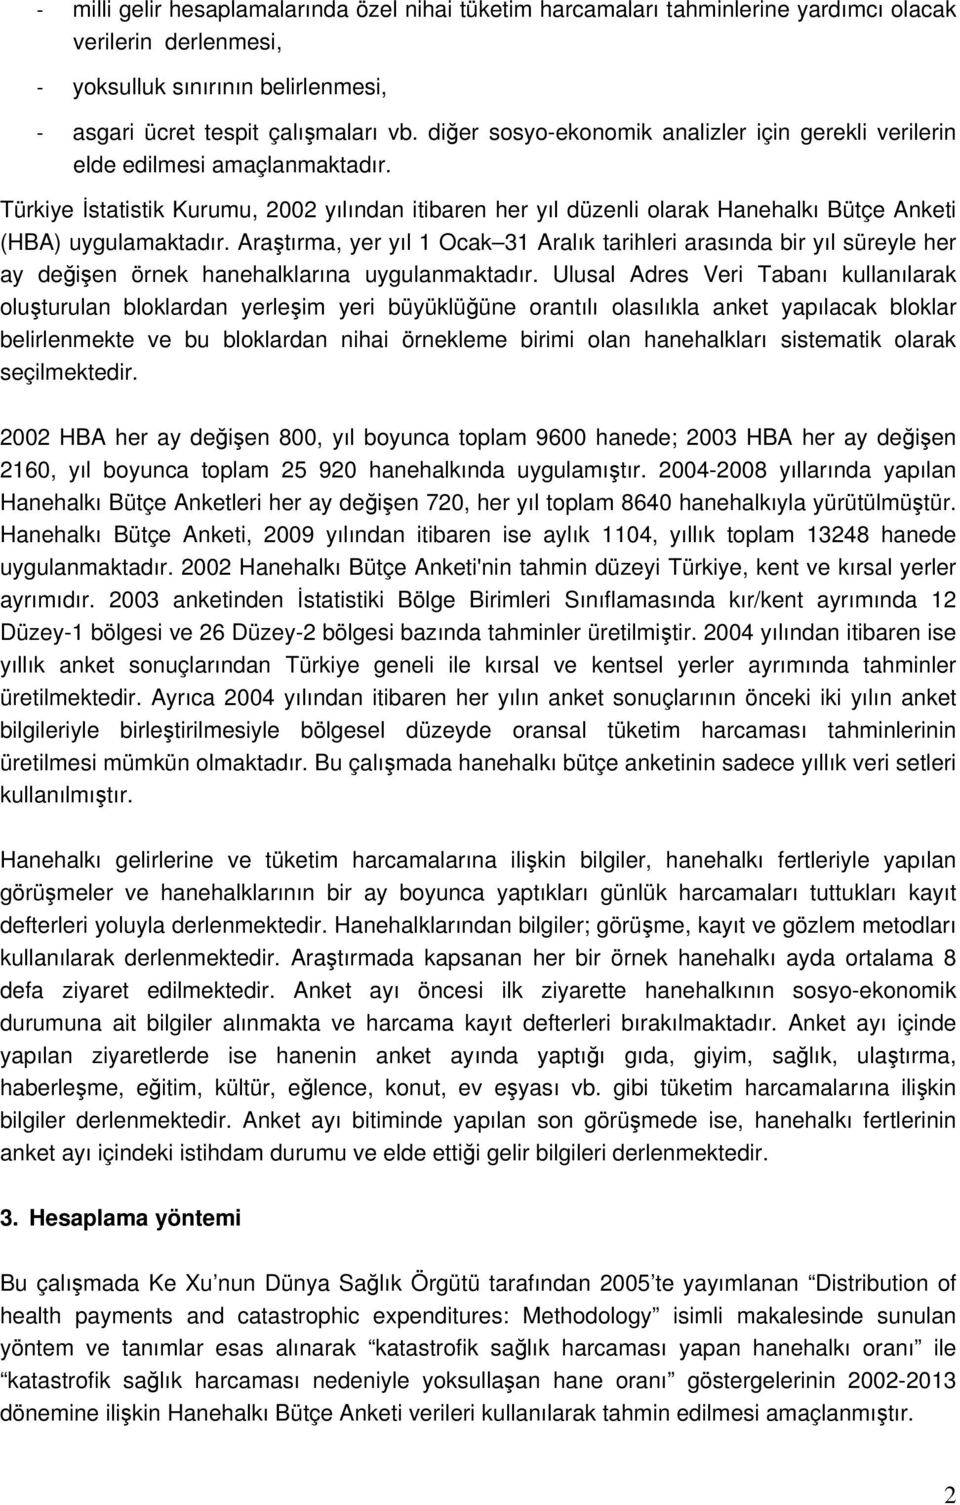 Türkiye İstatistik Kurumu, 2002 yılından itibaren her yıl düzenli olarak Hanehalkı Bütçe Anketi (HBA) uygulamaktadır.